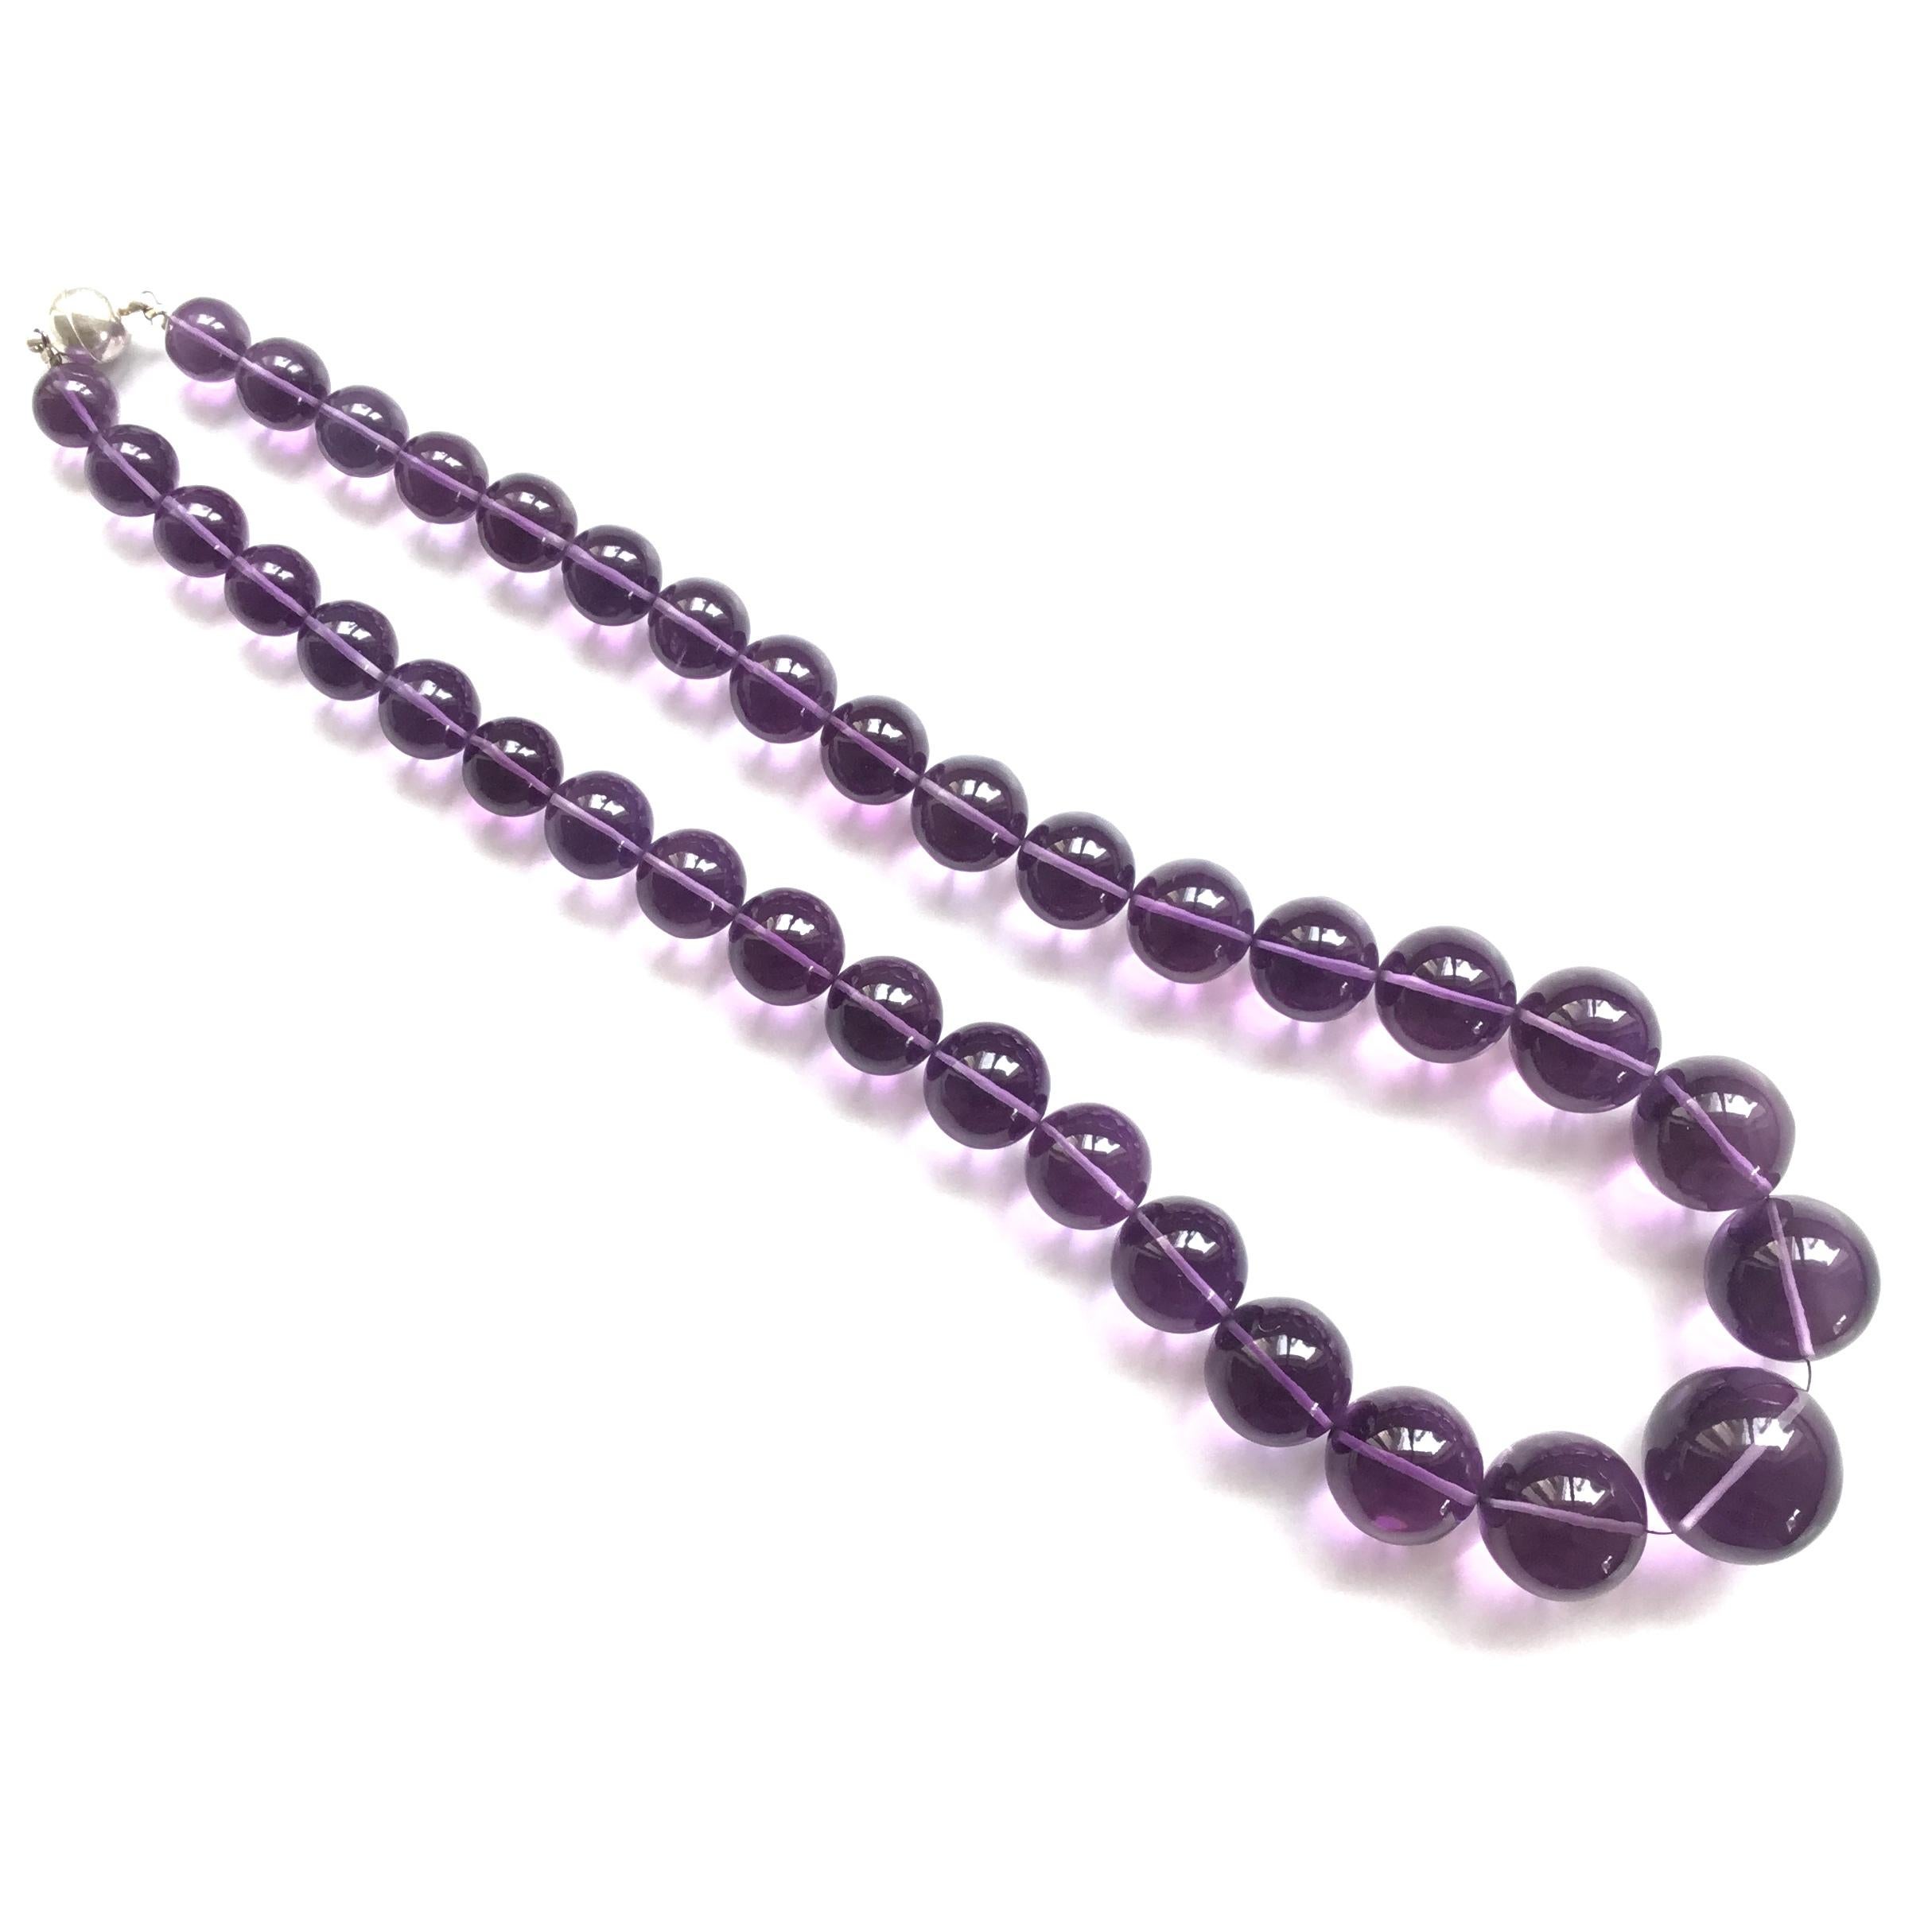 Top Qualität Natürliche Amethyst Kugeln Perlen Halskette Lupe Sauber Edelstein
Größe : 10 bis 22 MM Perlen
Gewicht : 744.45 Karat
Länge der Halskette : 16 Zoll